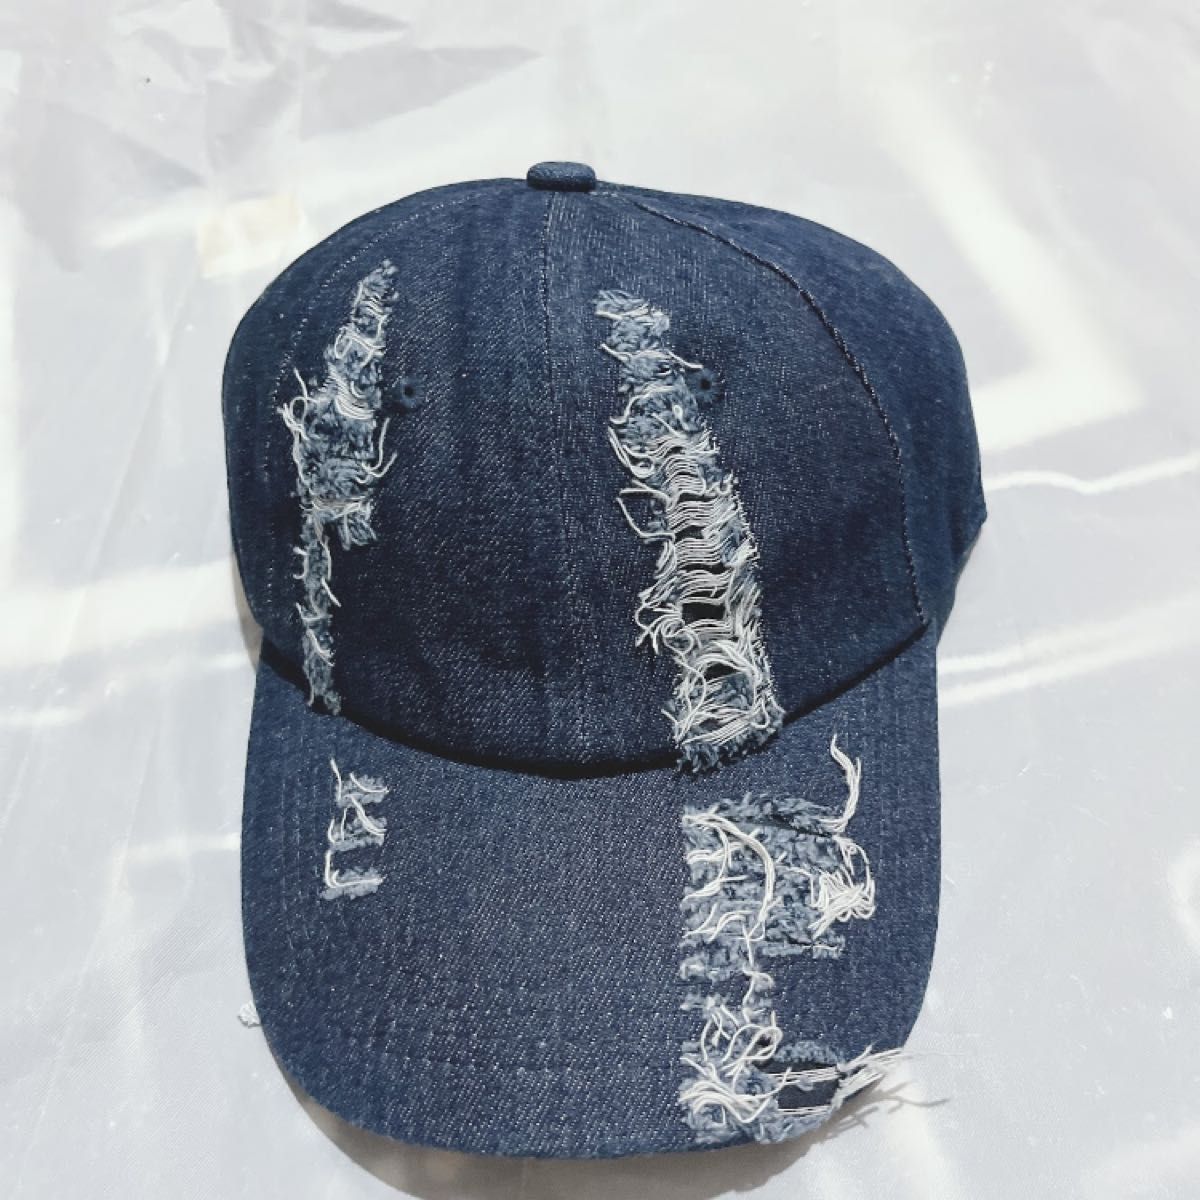 クラッシュデニム キャップ 帽子 韓国 メンズ レディース UVカット デニム帽子